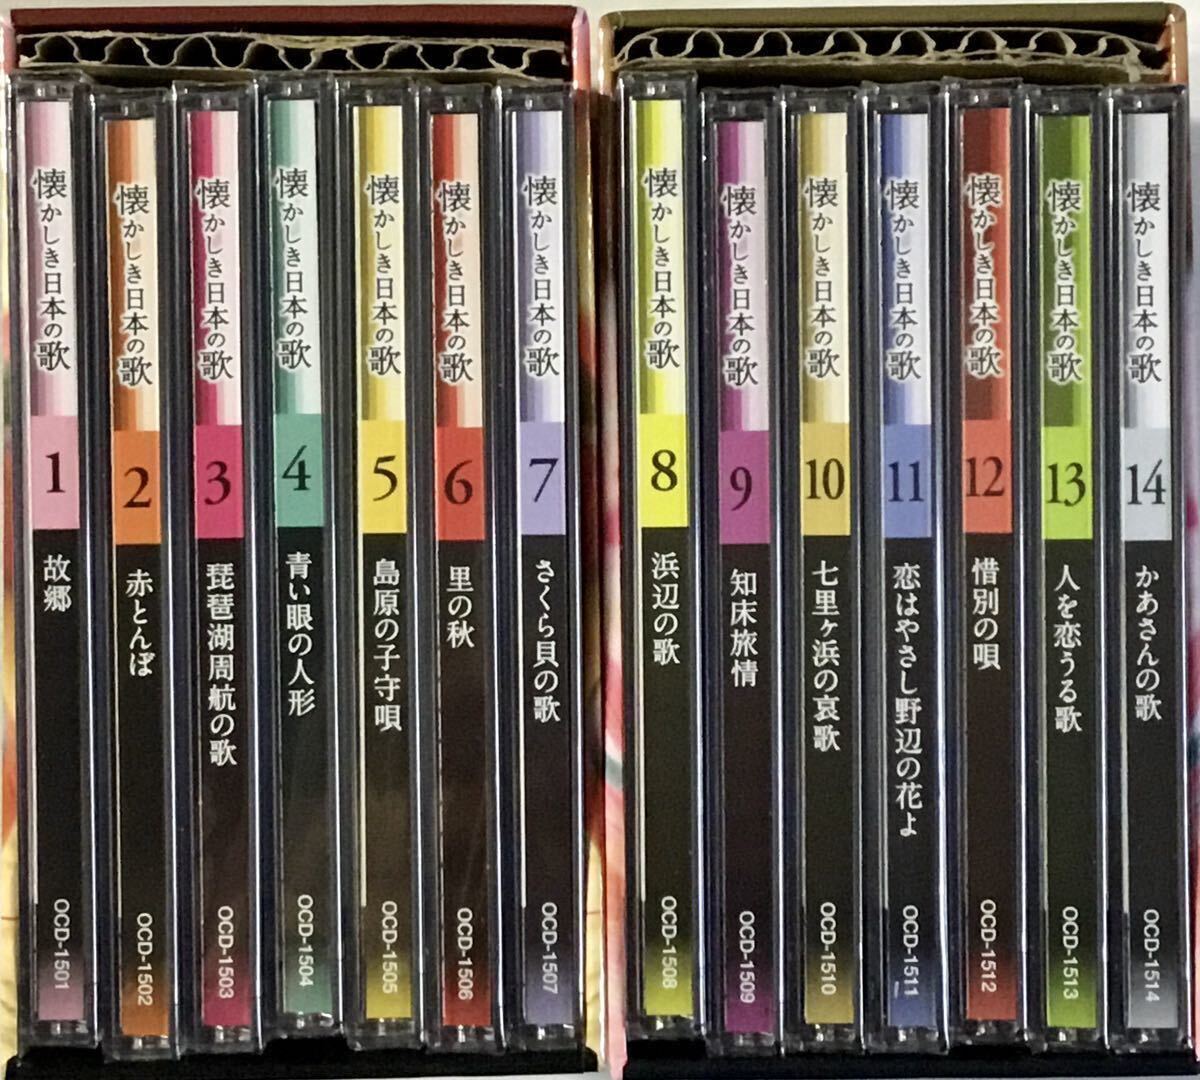 ☆ 懐かしき日本の歌 第一集・第二集 14枚組 CD-BOX ディスク未開封 由紀さおり 安田祥子 森山良子 加藤登紀子